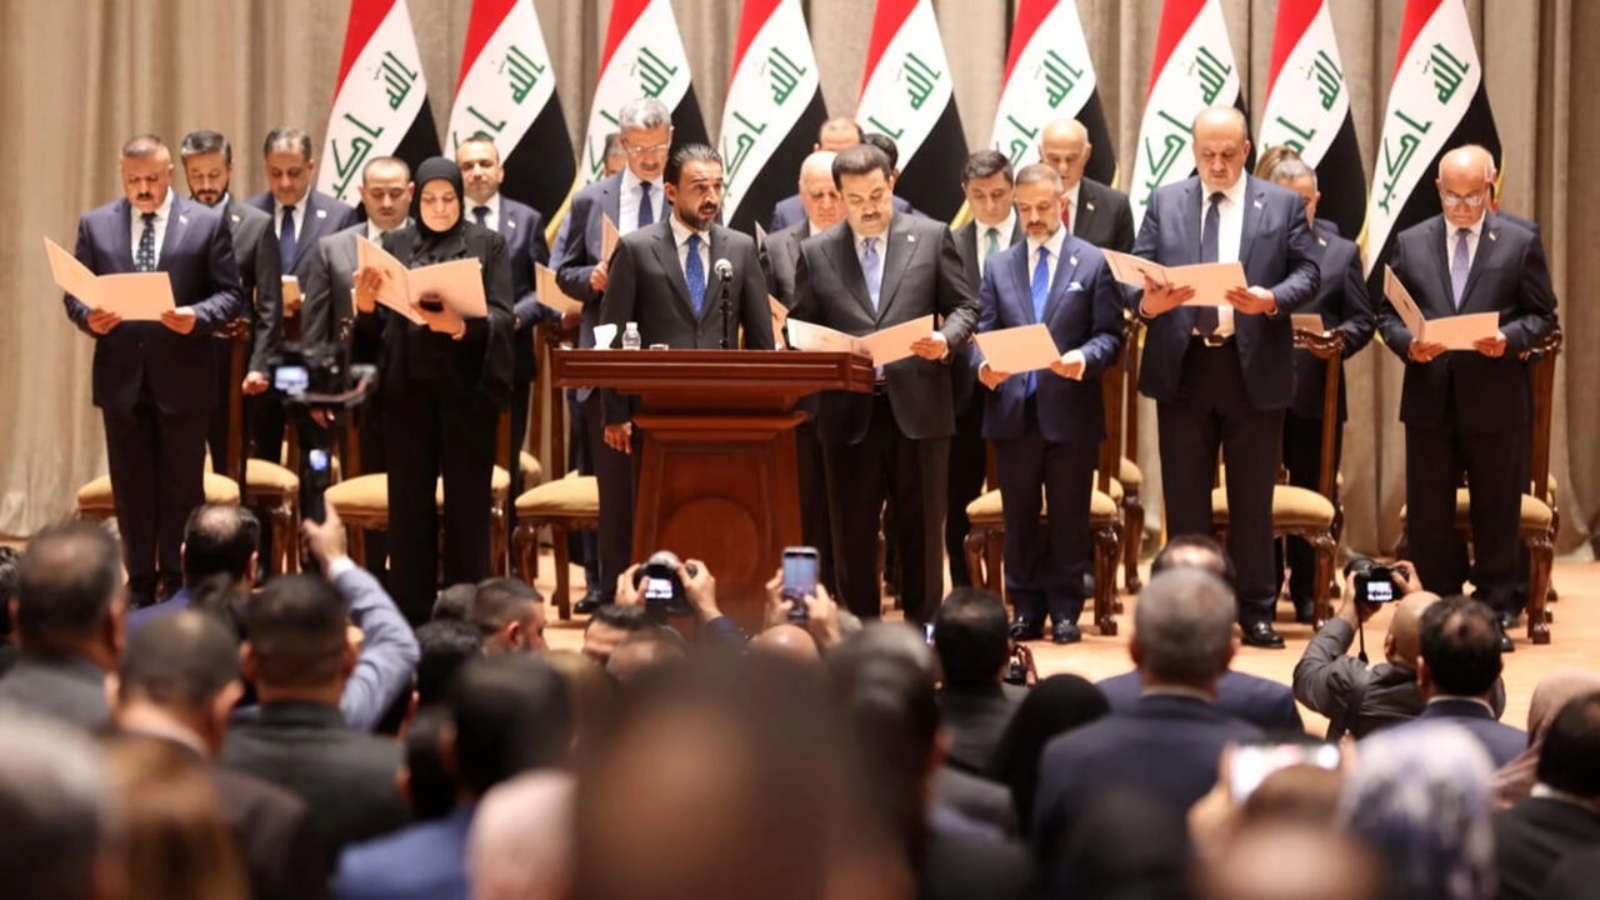 صورة موزعة من البرلمان العراقي تظهر رئيس الحكومة الجديد محمد السوداني ووزائه إلى جانب رئيس البرلمان محمد الحلبوسي خلال جلسة منح الثقة في 27 أكتوبر 2022 في بغداد